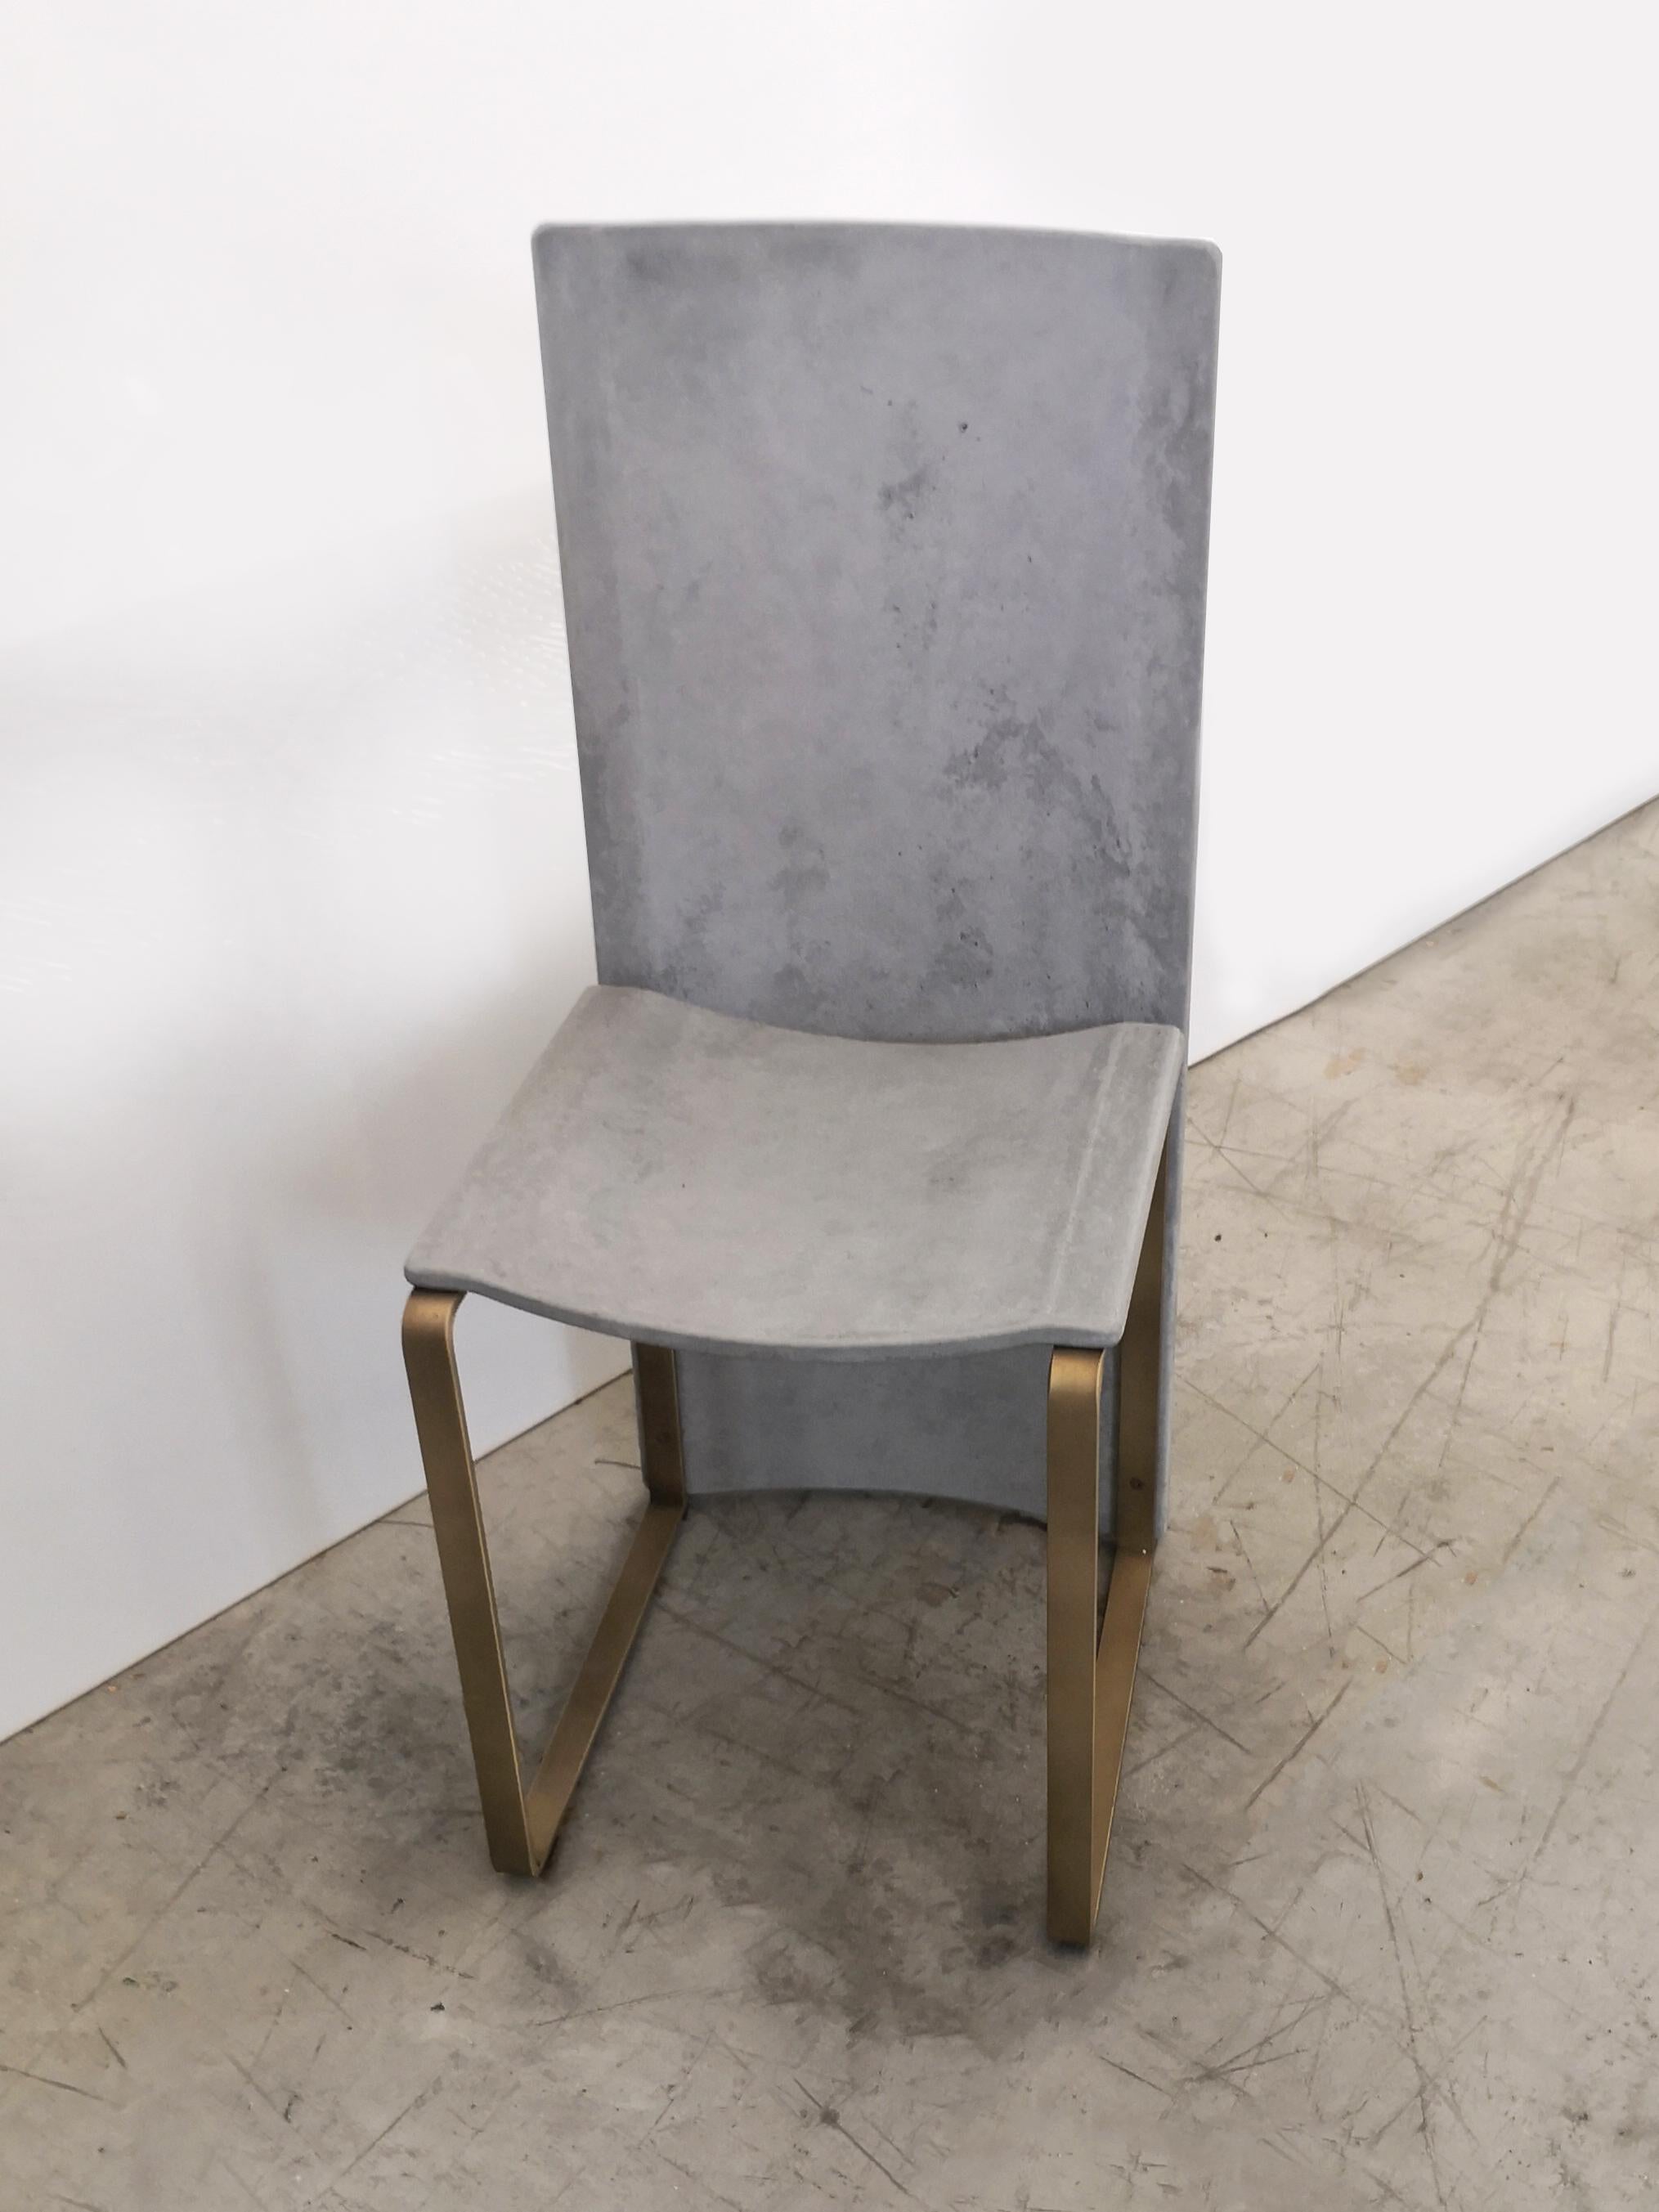 Rubeda concrete chair design Roberto Giacomucci 2018 For Sale 1